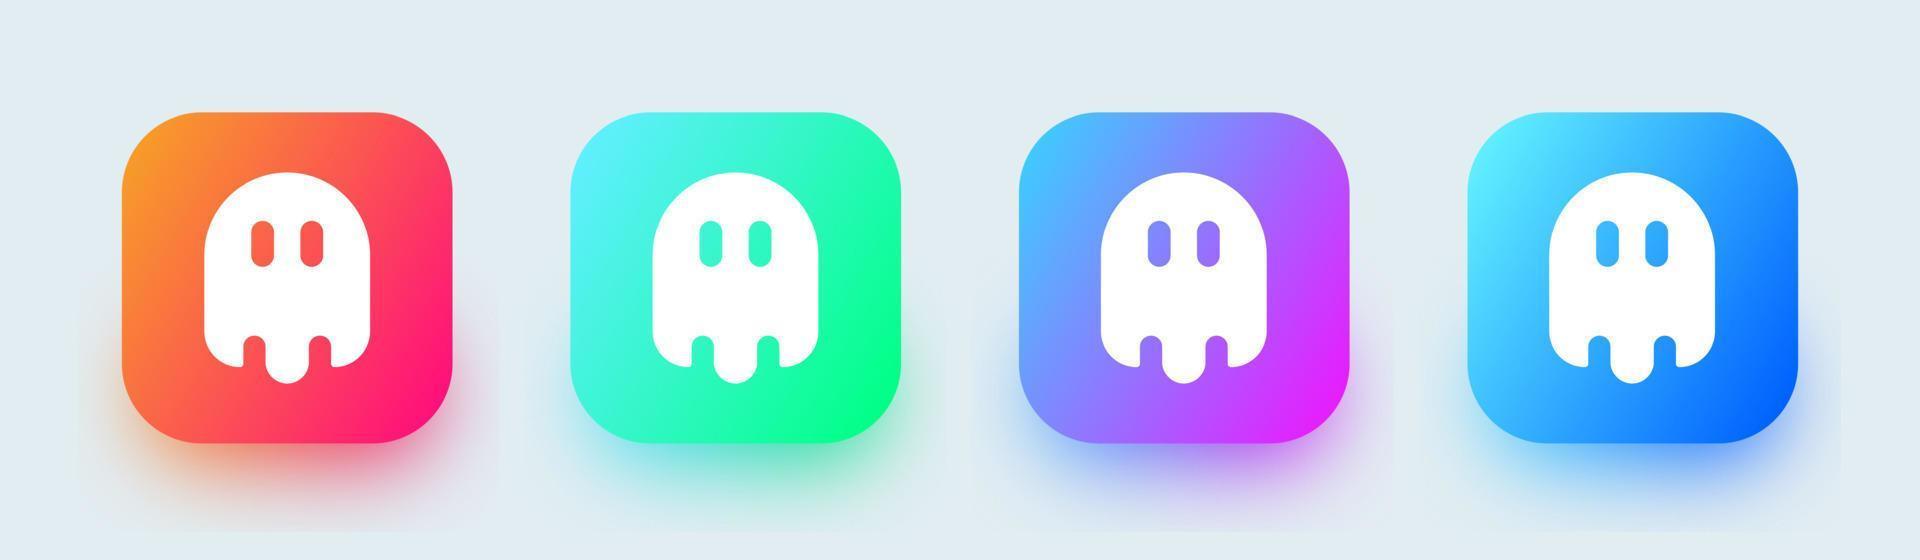 icône solide fantôme dans des couleurs dégradées carrées. illustration vectorielle de signes d'esprit effrayants. vecteur